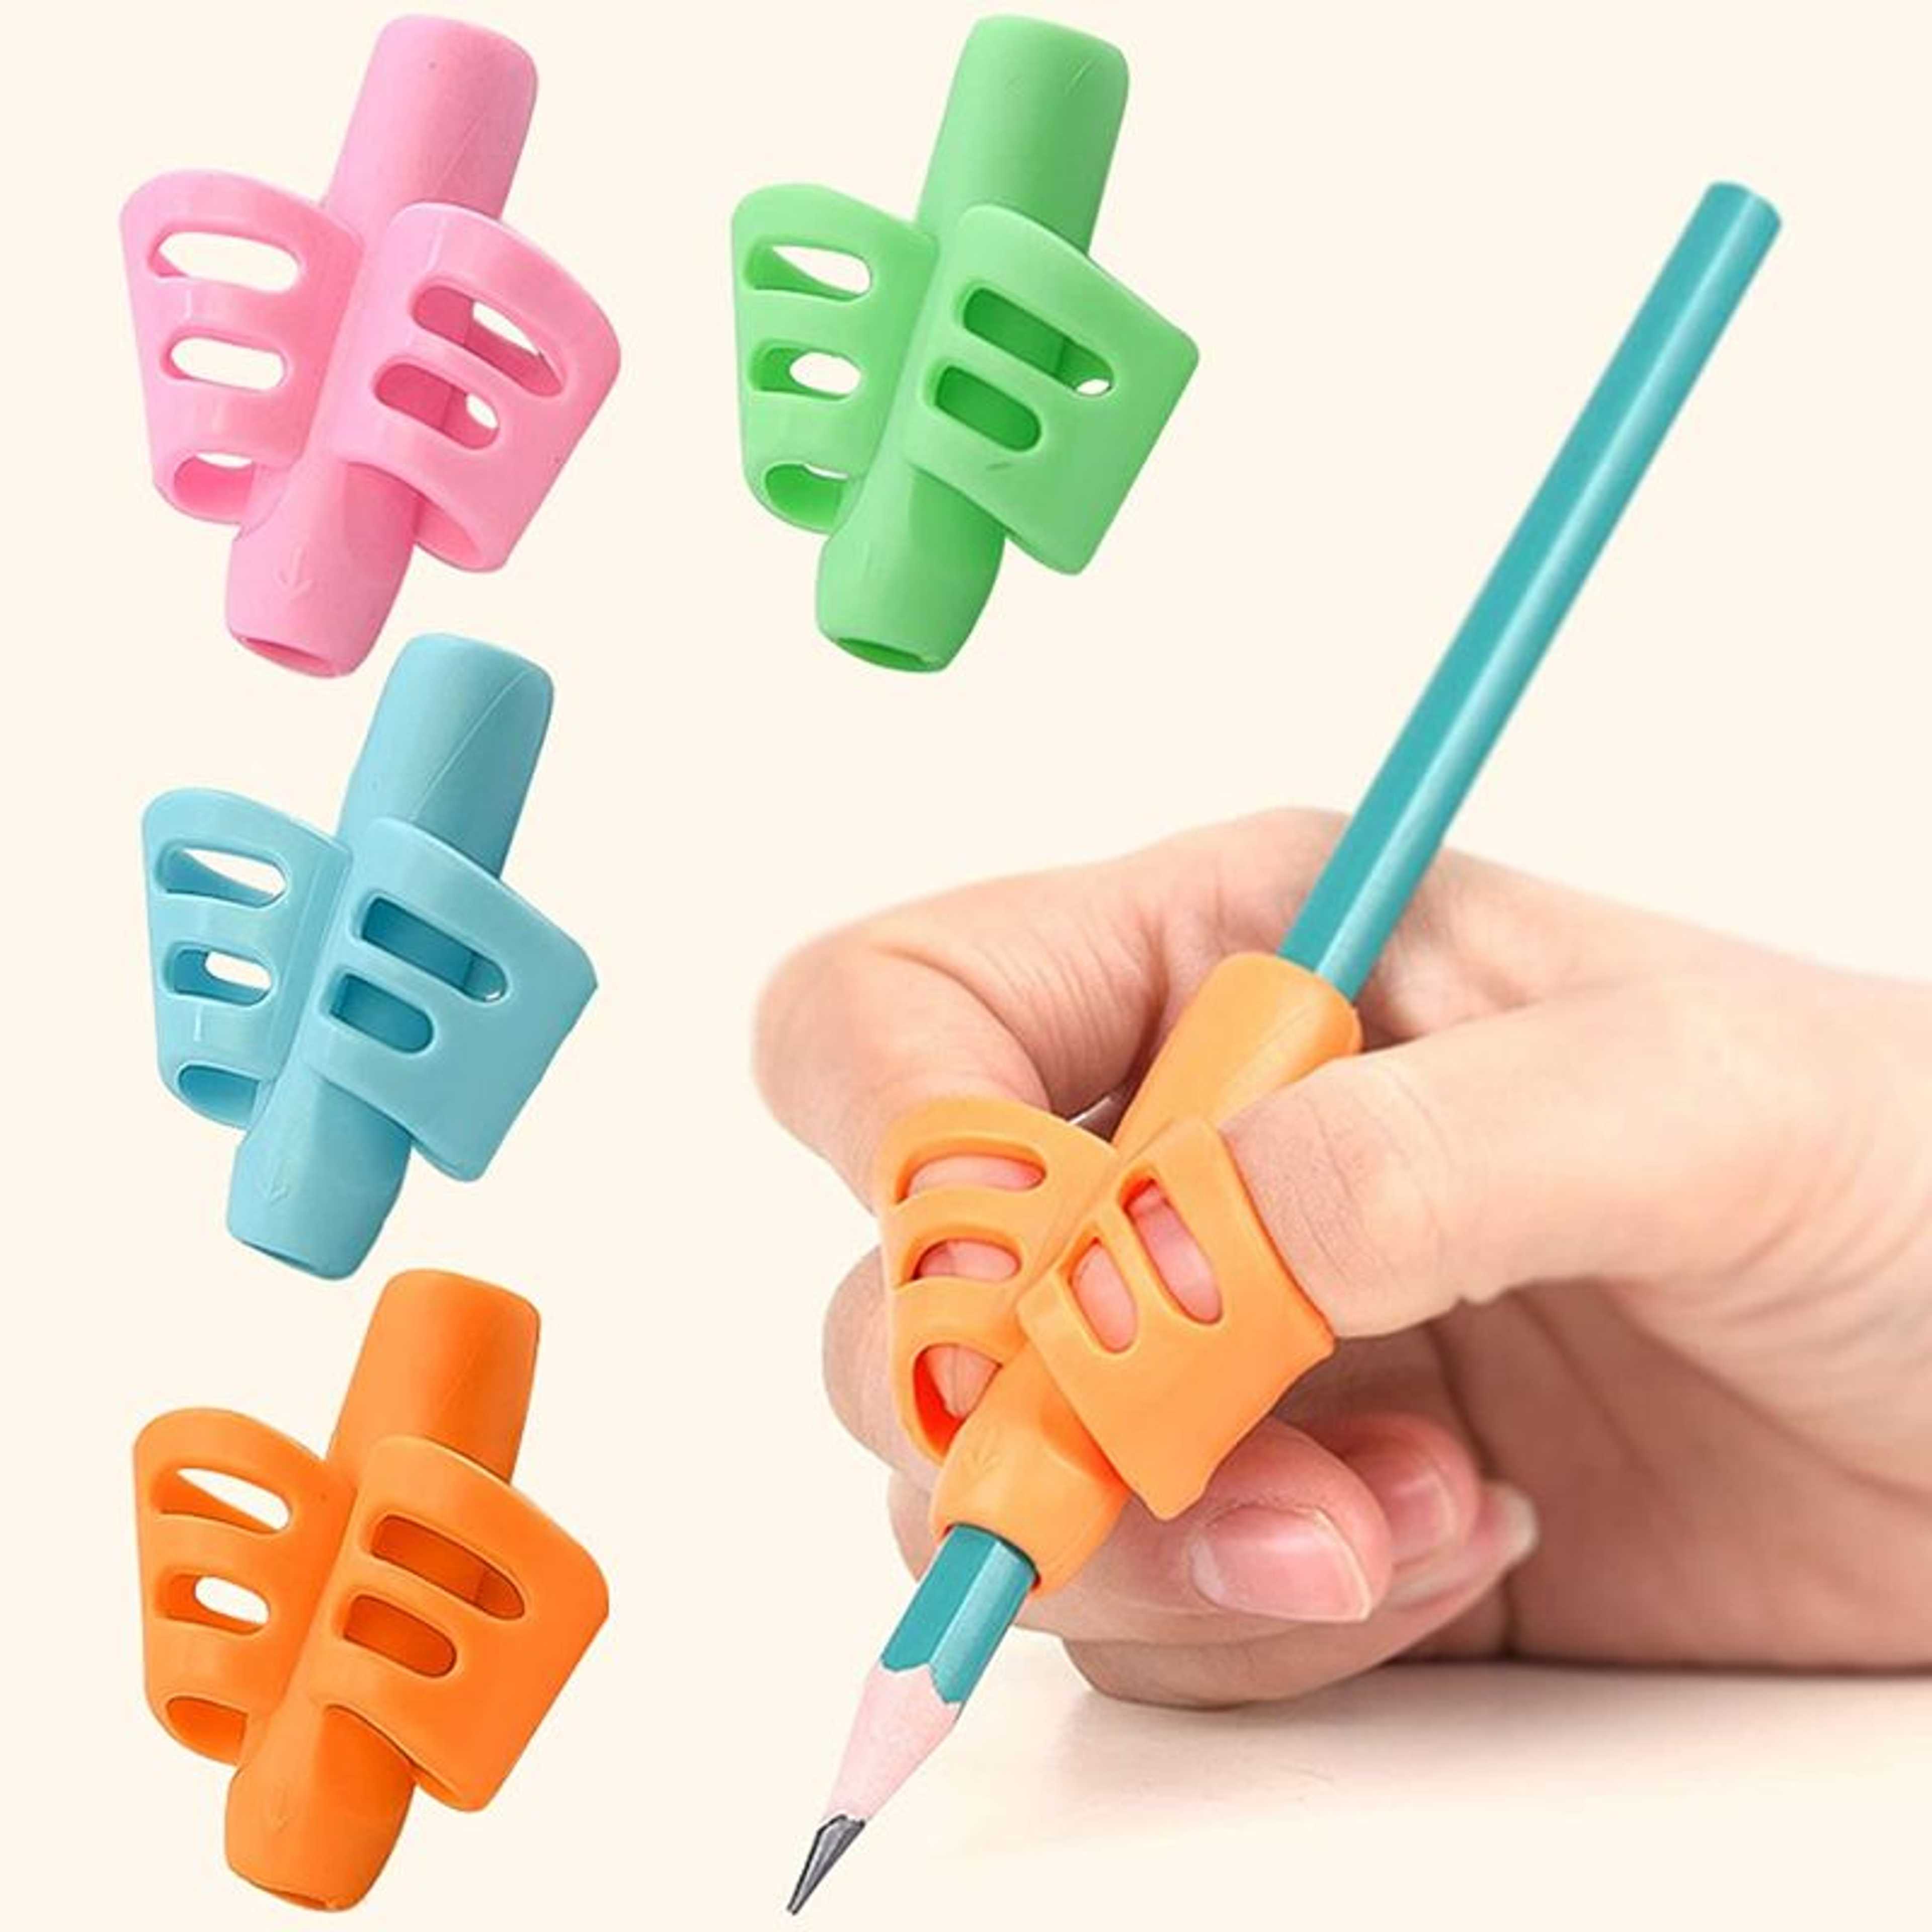 Children Pencil Holder Aid/Grip